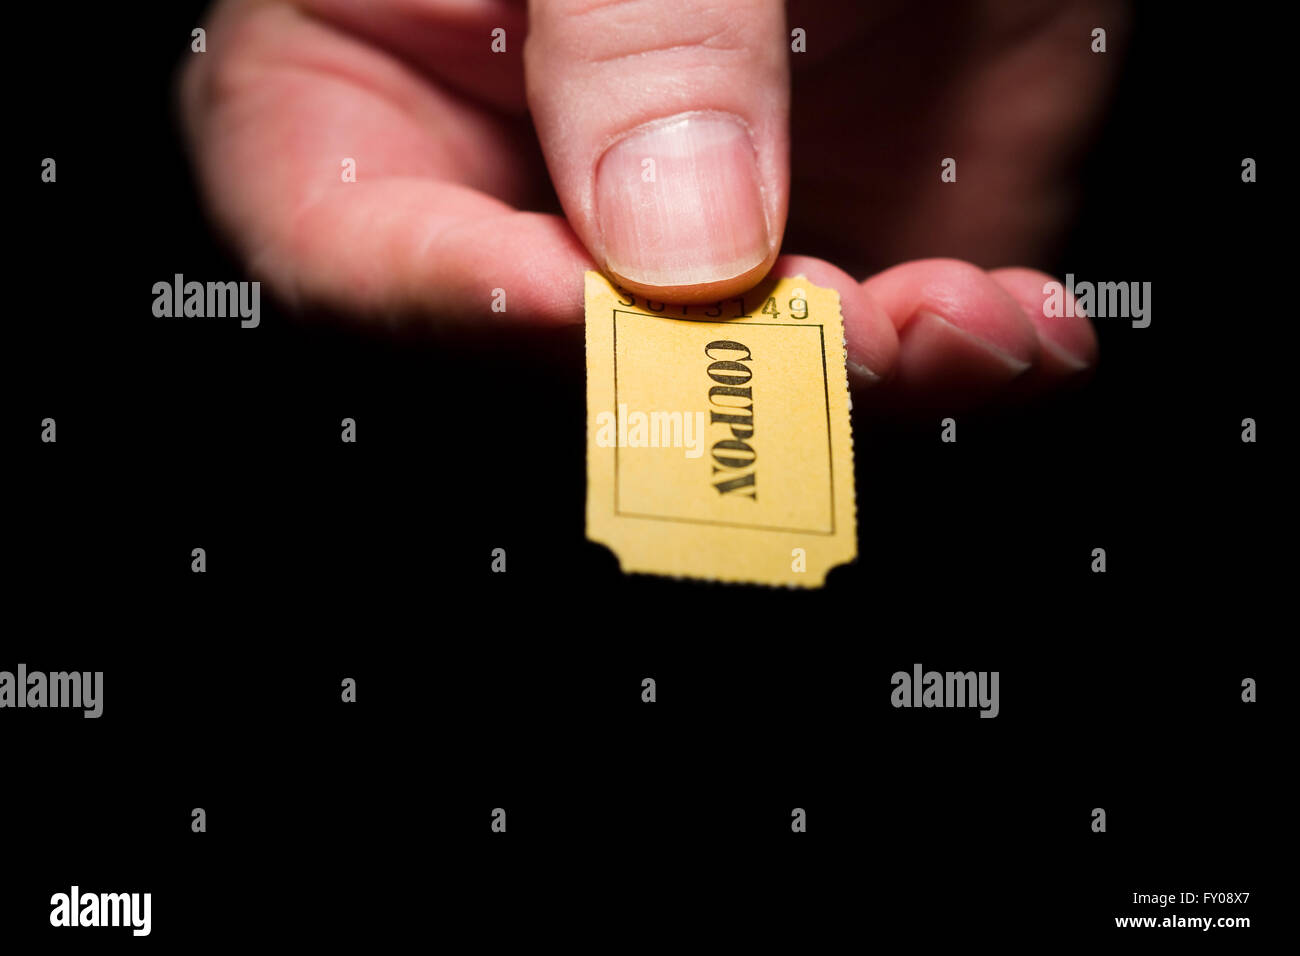 Un homme de main droite tenant un carton jaune à 7 chiffres du ticket marqué avec le mot 'COUPON' de l'encre noire Banque D'Images